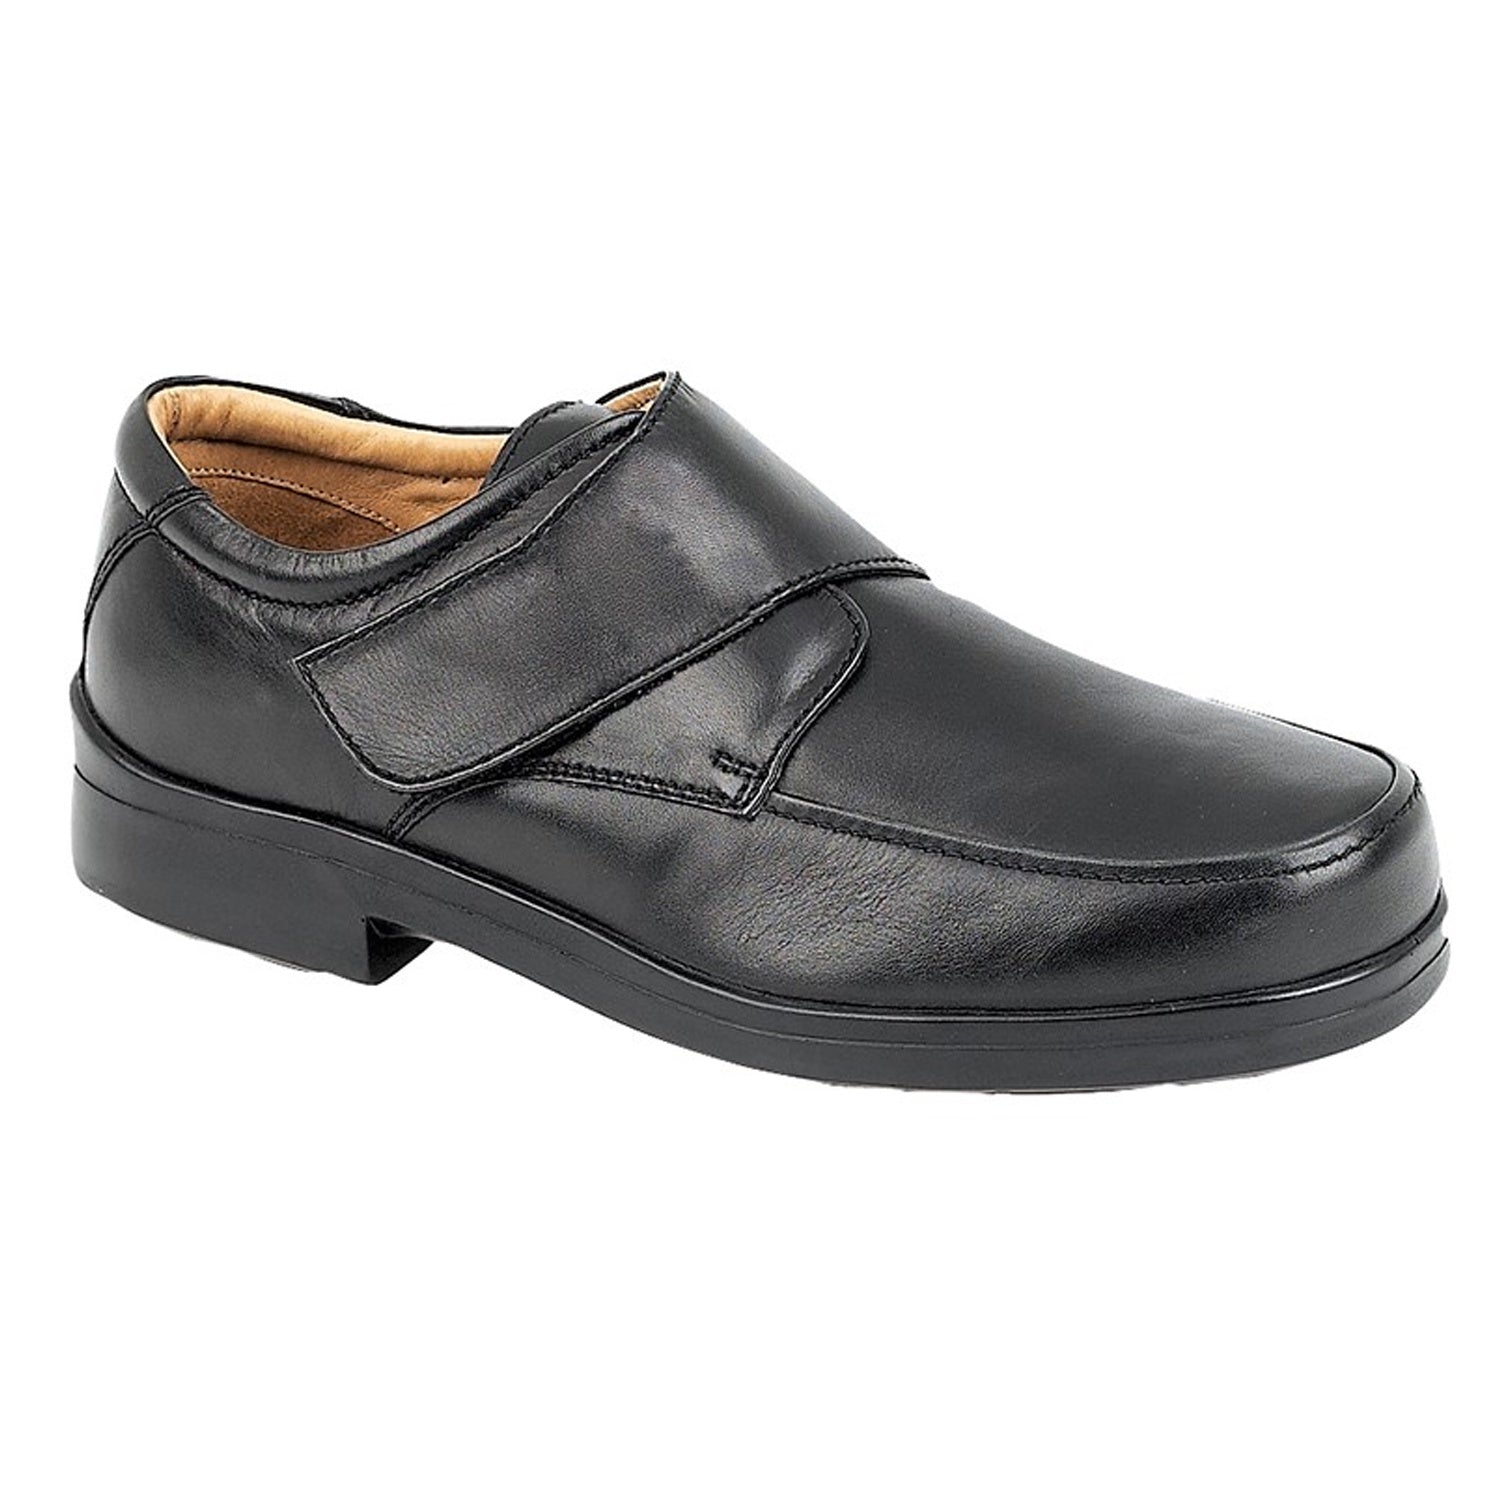 Roamers Shoes - M404 - Black 1